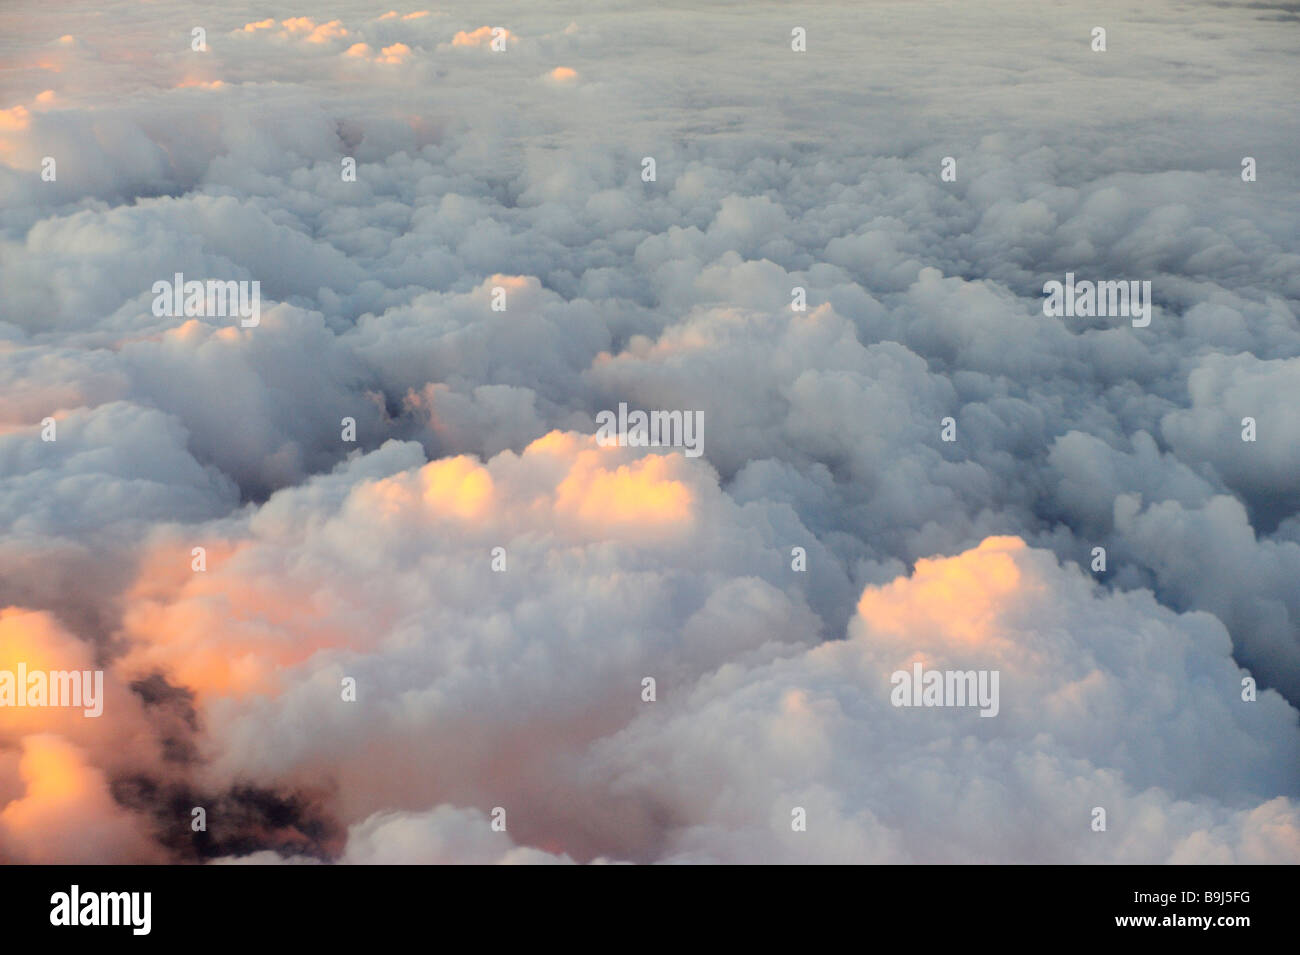 Visto desde arriba de las nubes al amanecer. Foto de stock